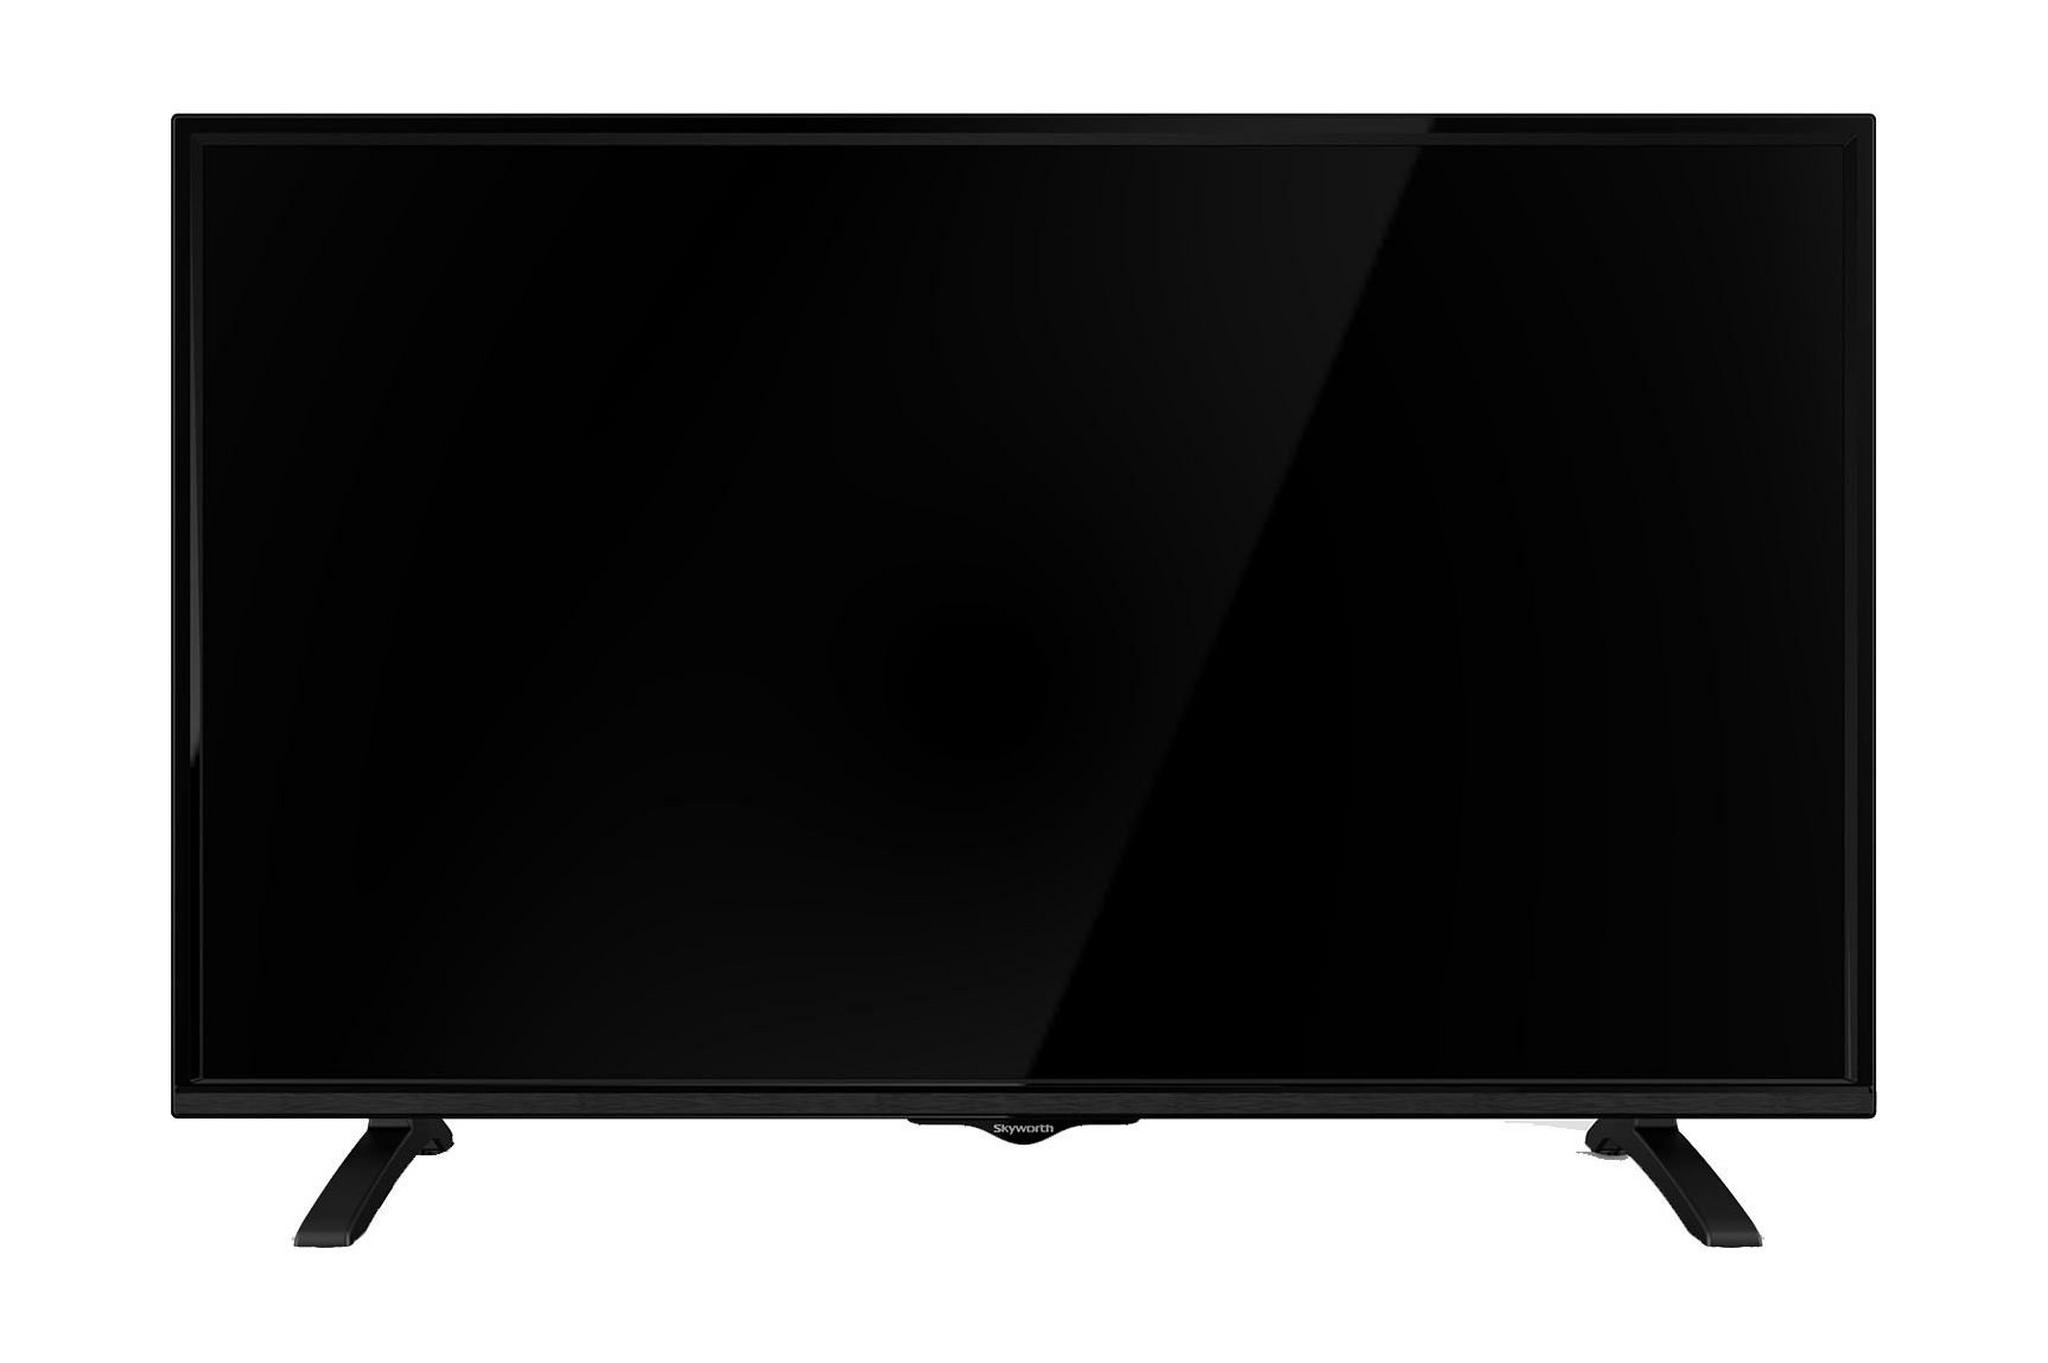 Skyworth E3000 50-inch Full HD (1080p) LED TV - 50E3000